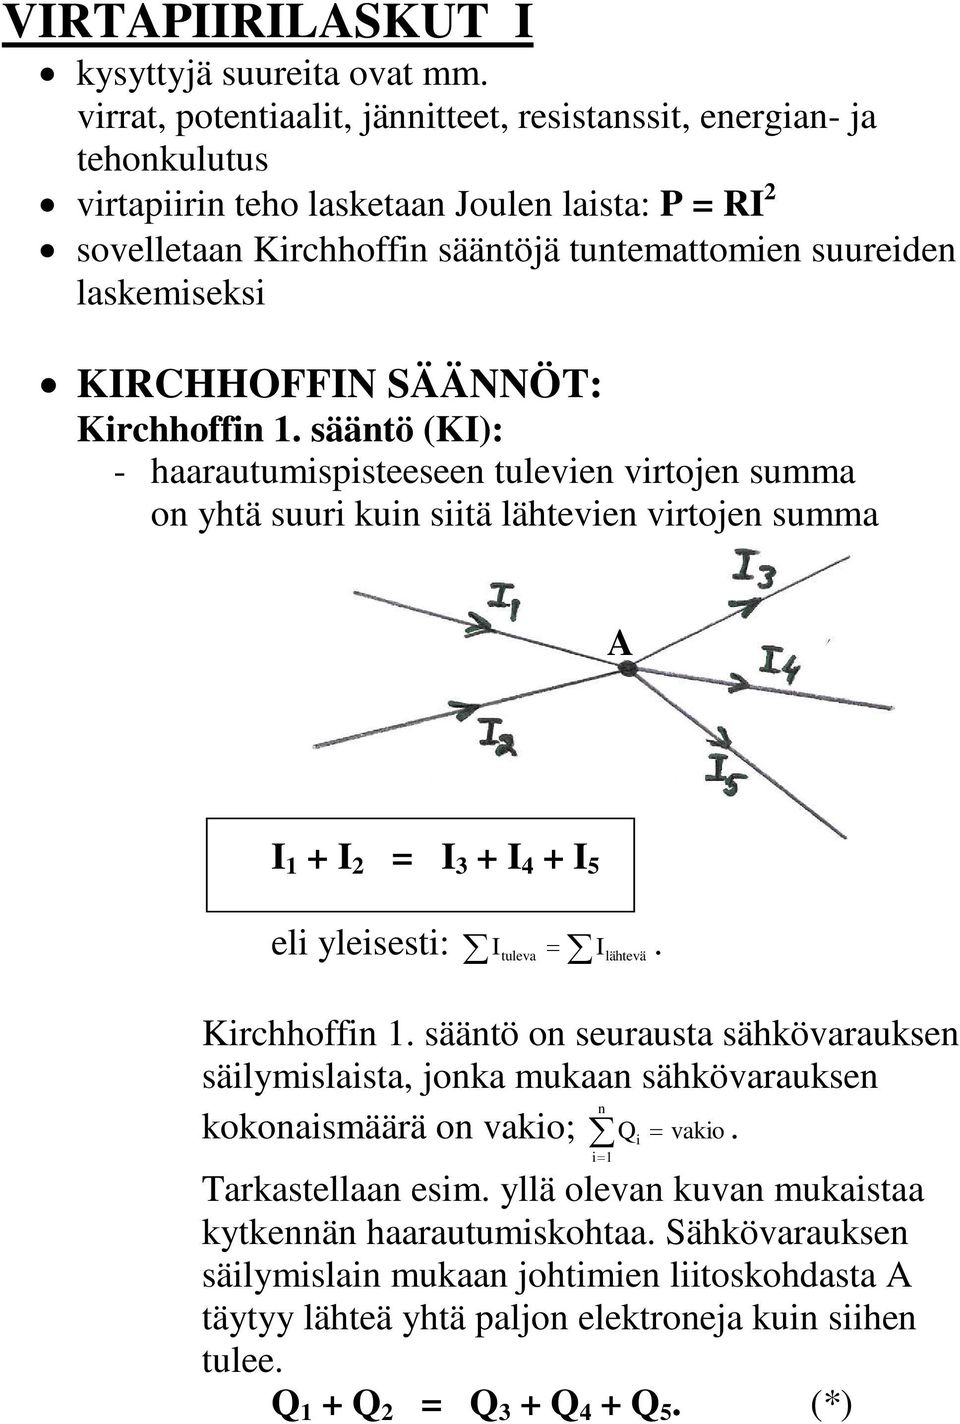 KRCHHOFFN SÄÄNNÖT: Kirchhoffin. sääntö (K): - haarautumispisteeseen tulevien virtojen summa on yhtä suuri kuin siitä lähtevien virtojen summa A + 2 = 3 + + 5 eli yleisesti: tuleva.